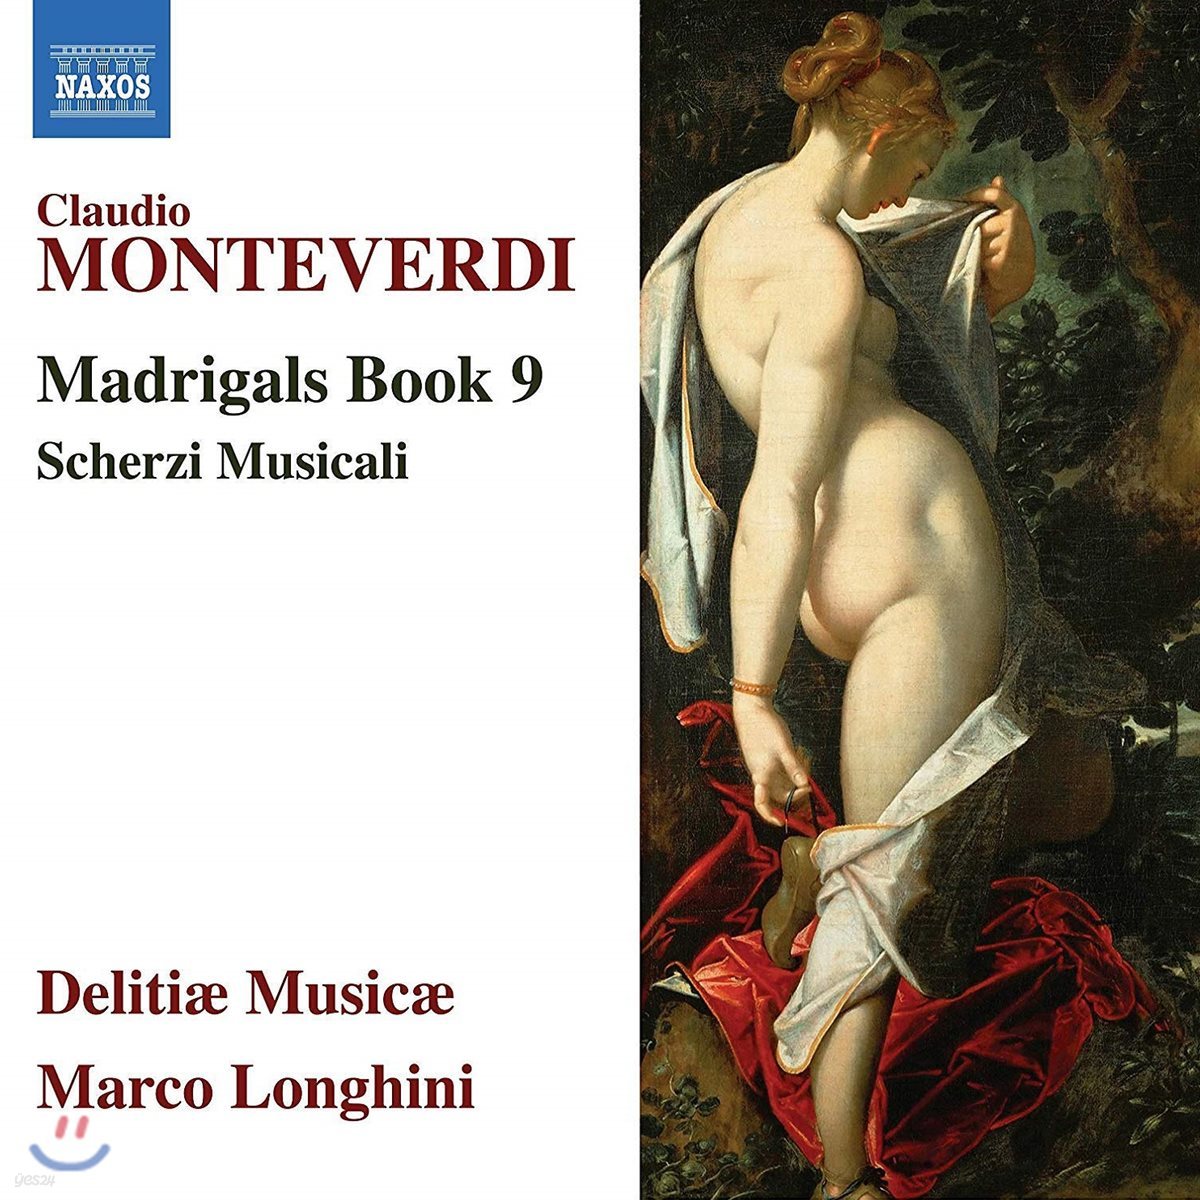 Delitiae Musicae 몬테베르디: 마드리갈 9권 - 음악의 유희 (Monteverdi: Madrigals Book 9 - Scherzi musicali) 